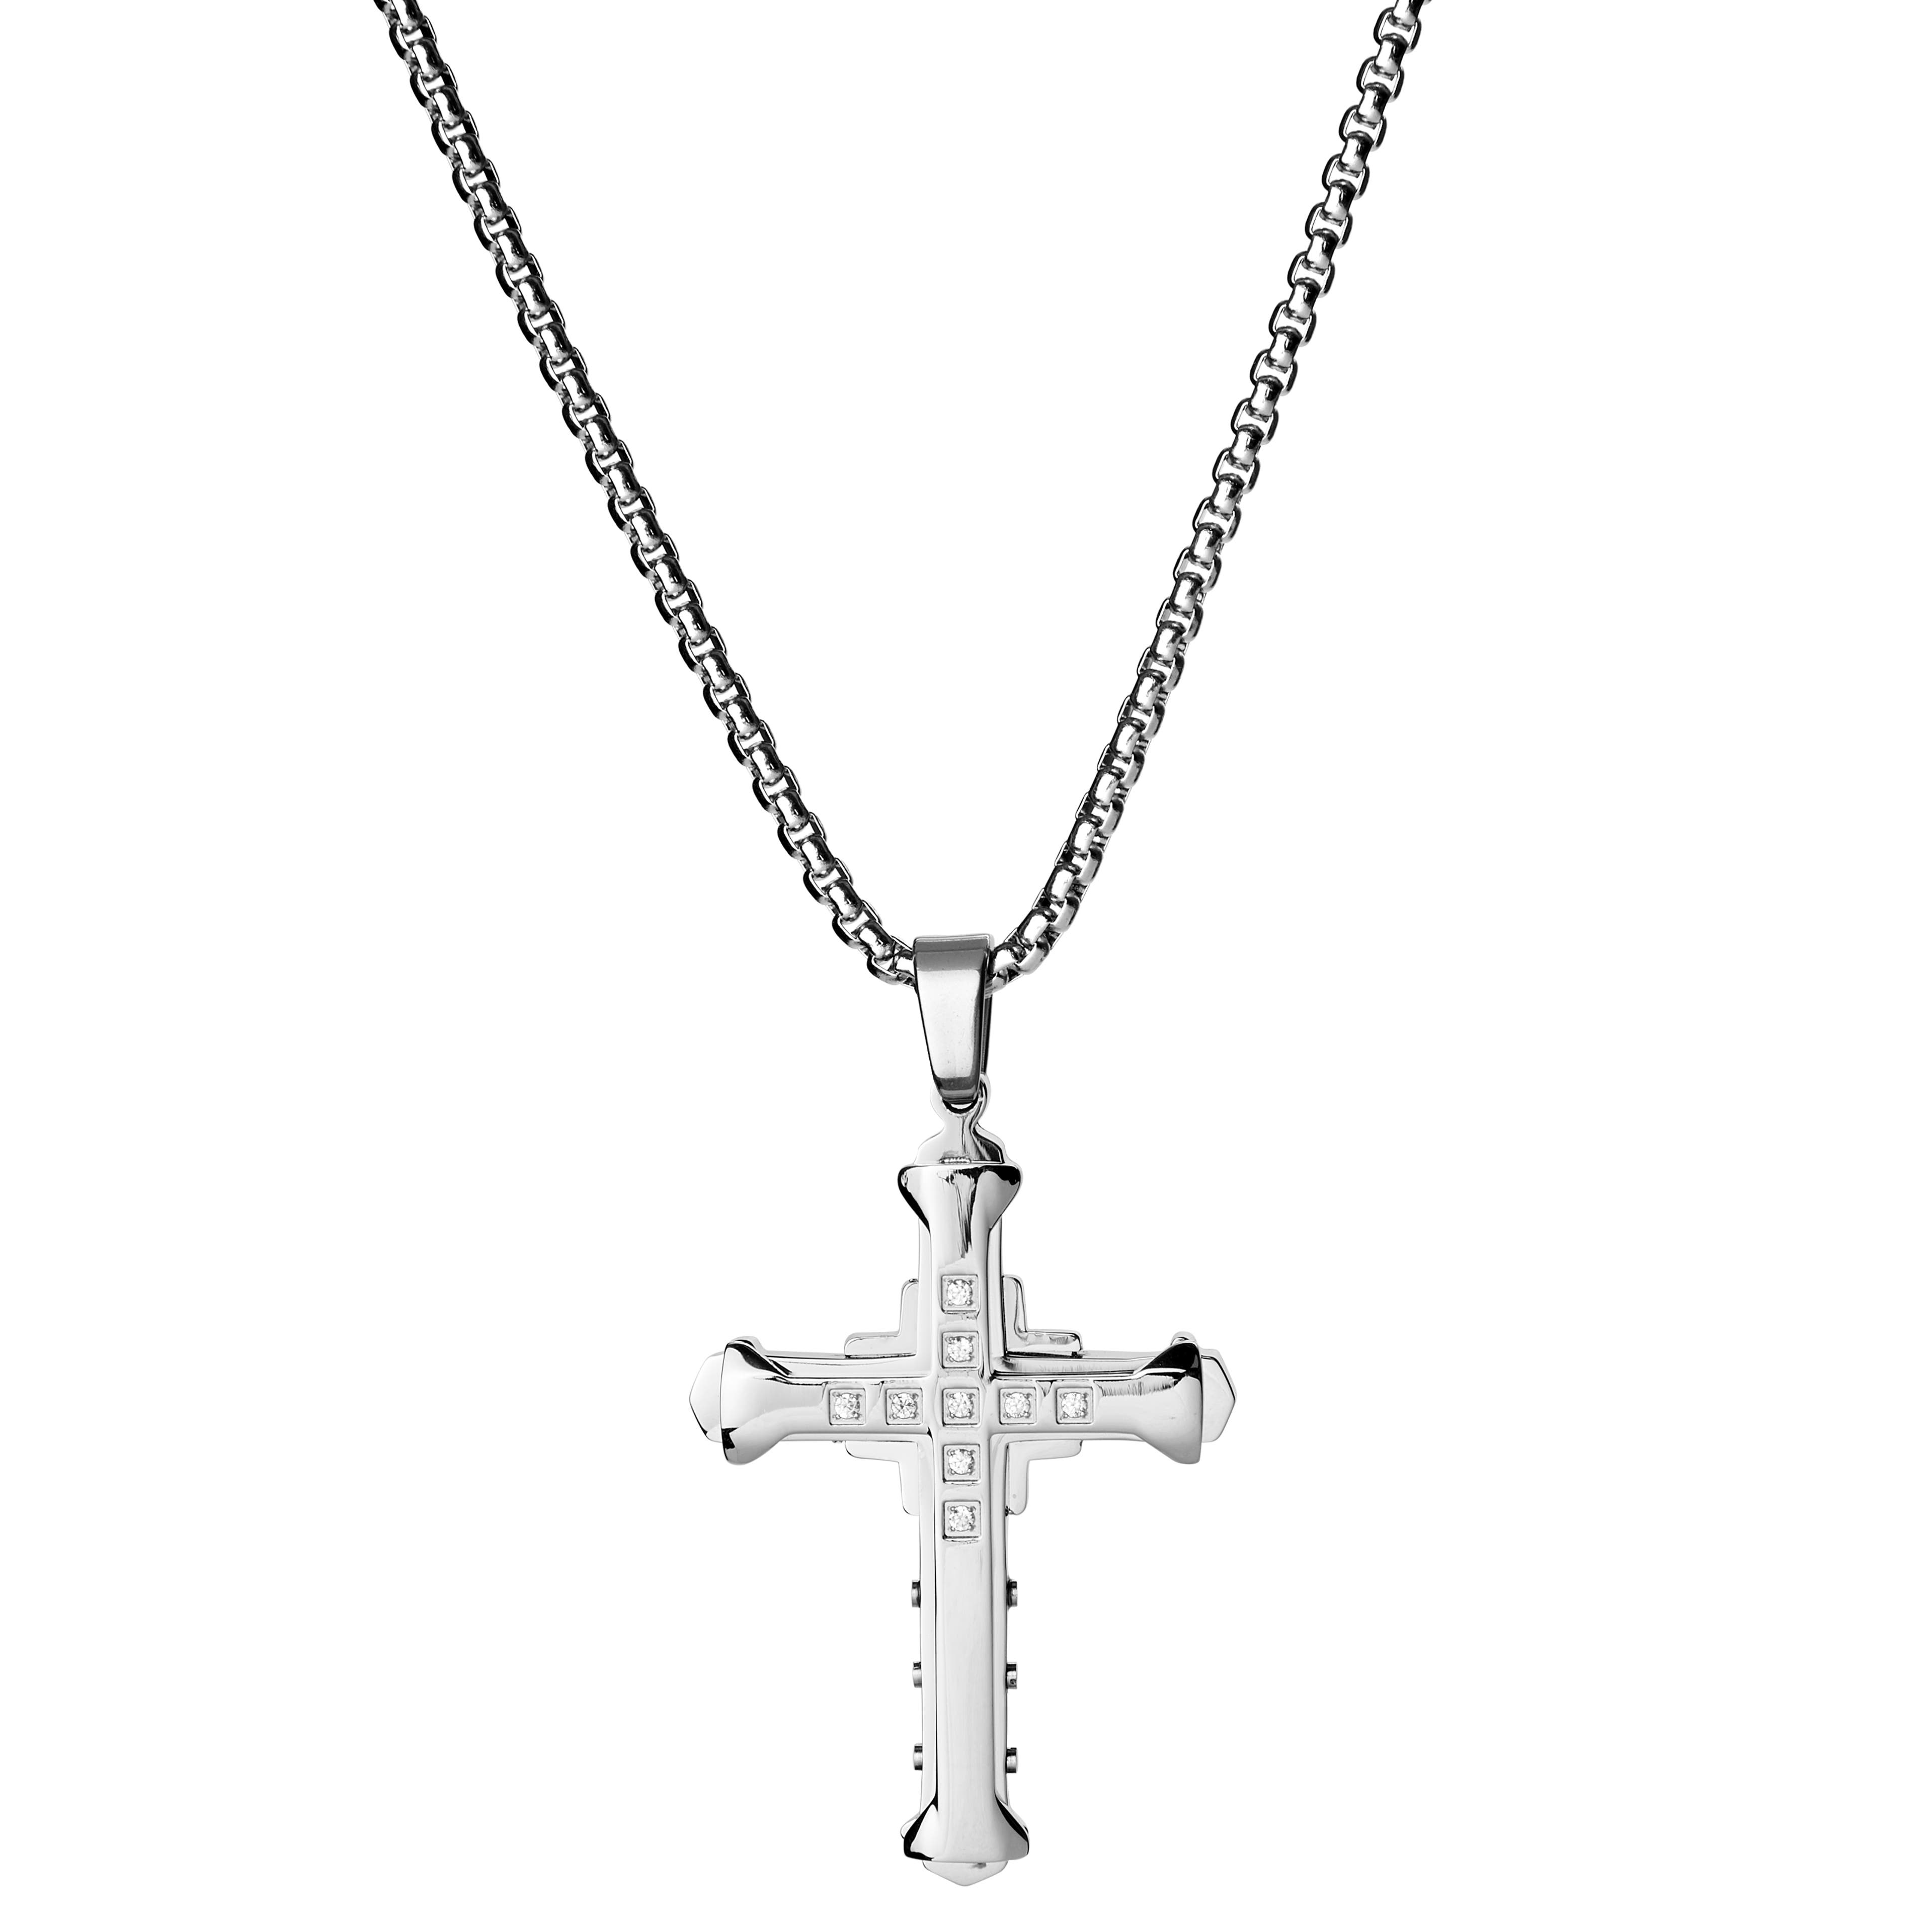 Náhrdelník s príveskom v tvare kríža s vybíjaným dizajnom a vrstvami 